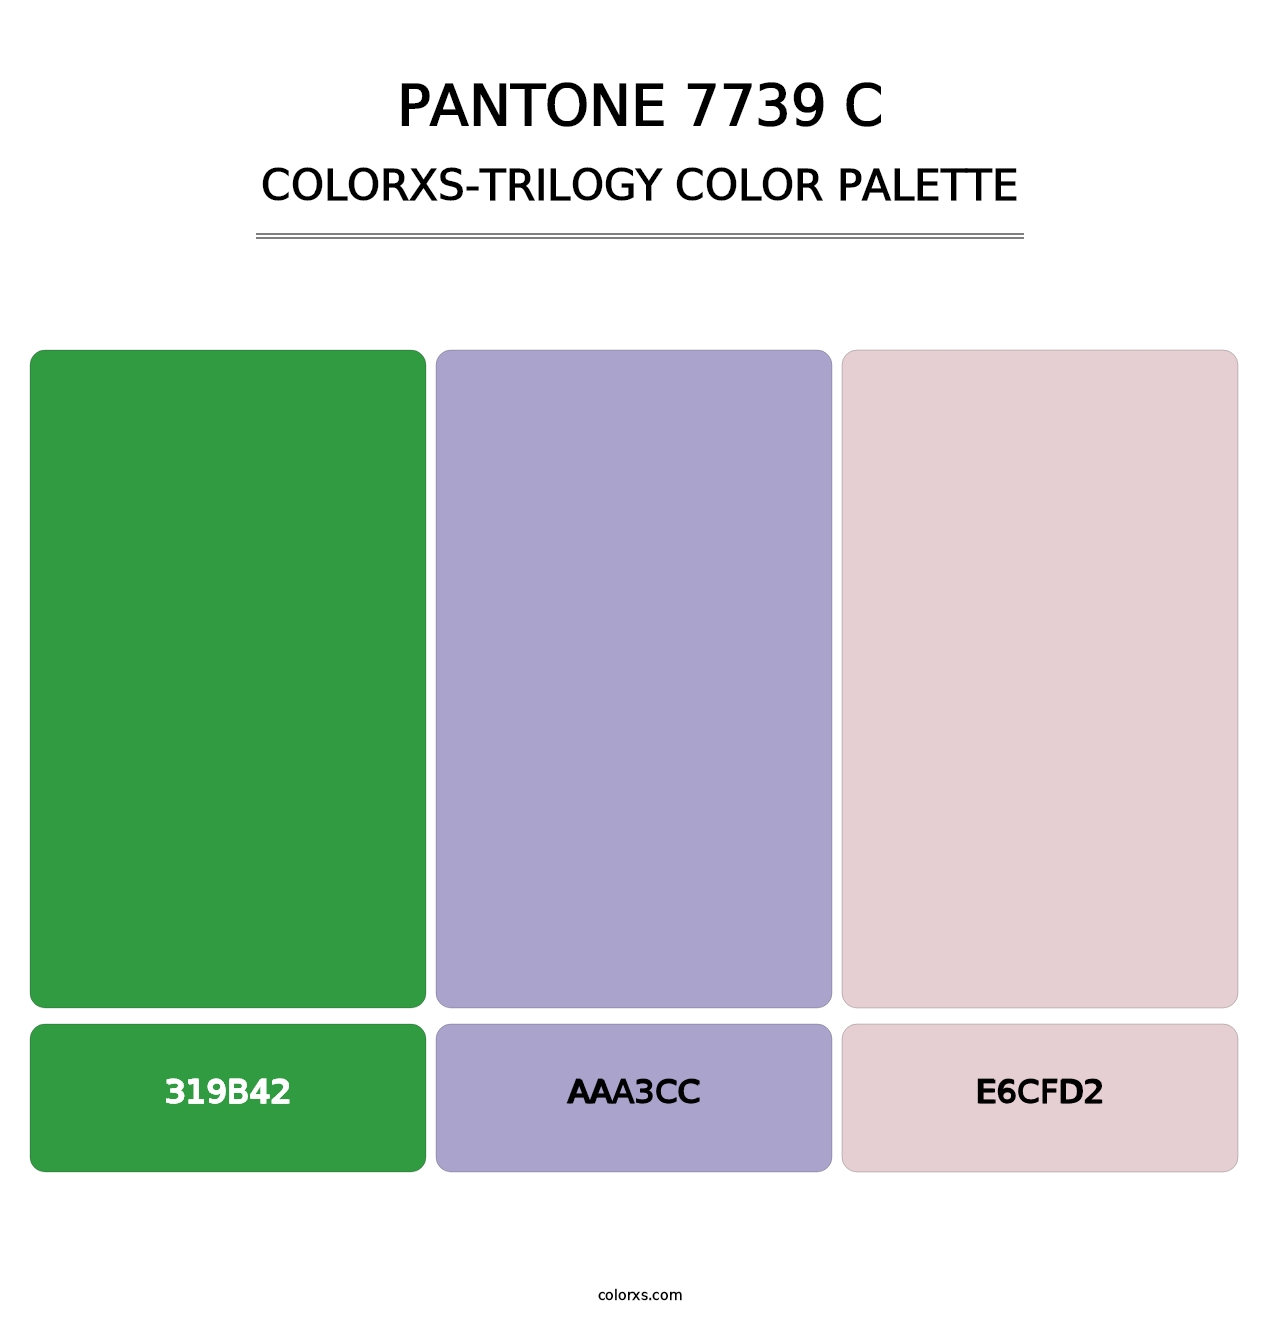 PANTONE 7739 C - Colorxs Trilogy Palette